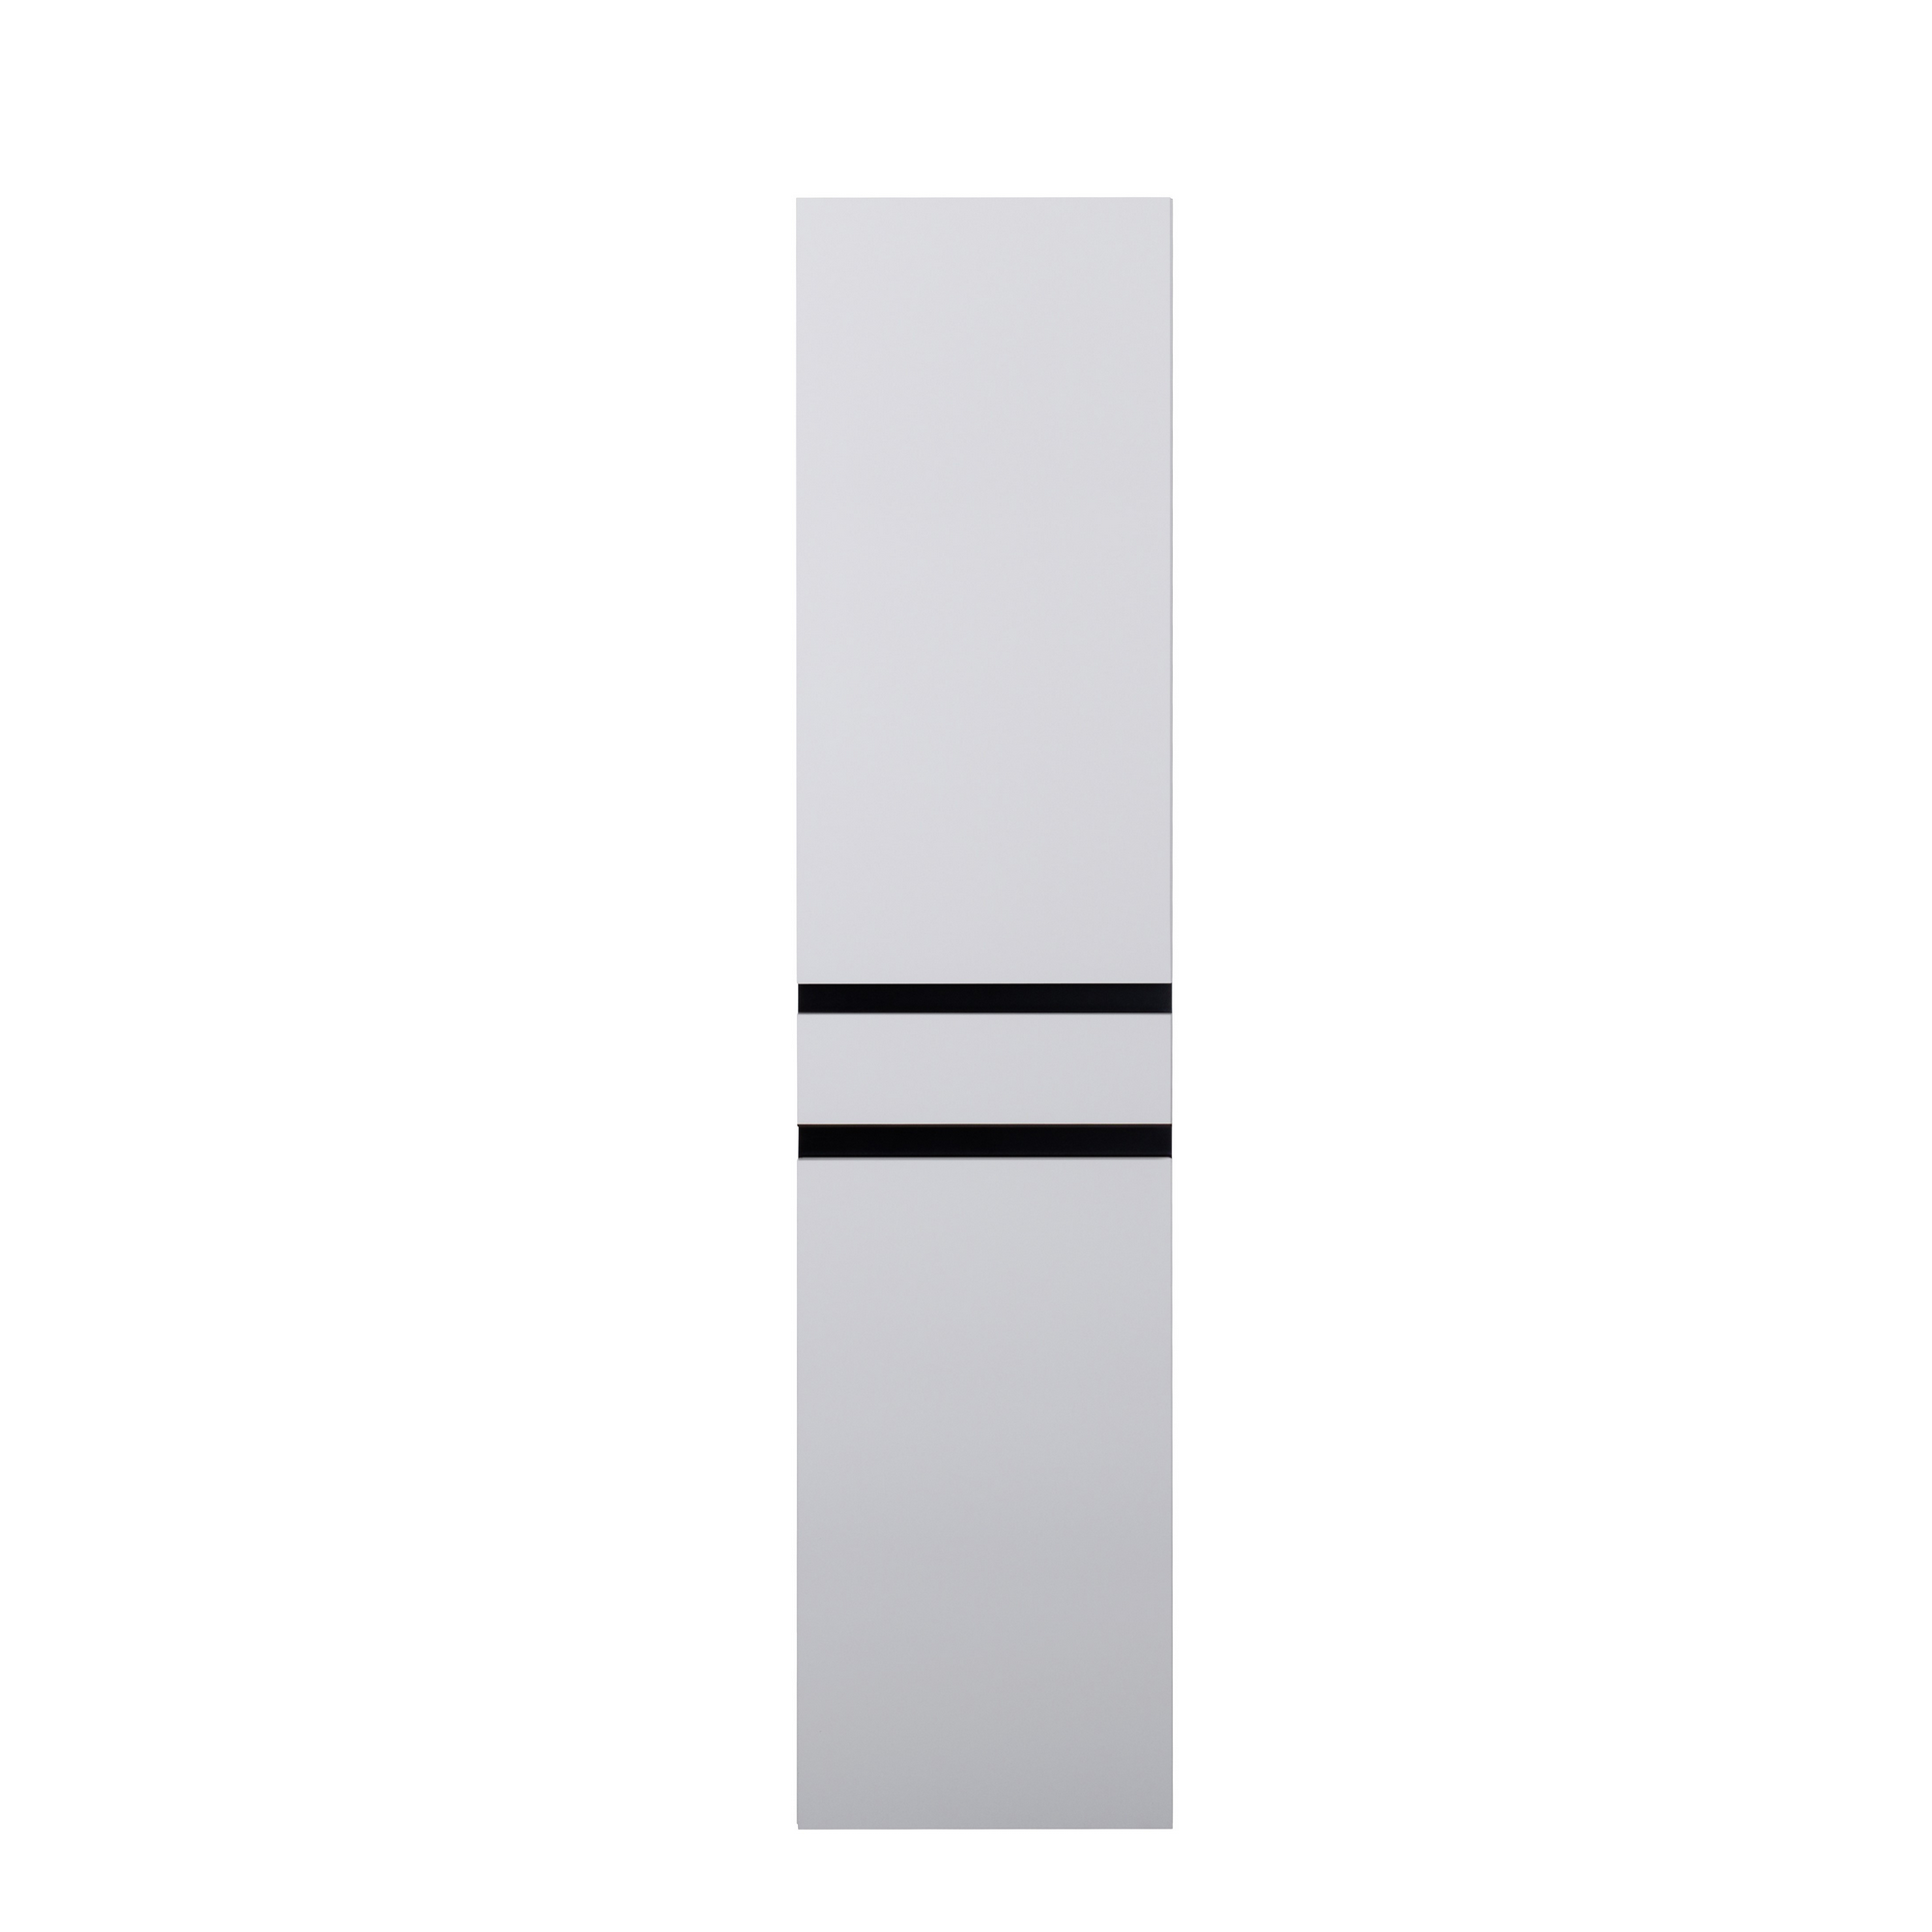 Beistellschrank 'OPTIpremio 2510clarus' weiß, schwarz 40 x 178,7 x 35 cm + product picture